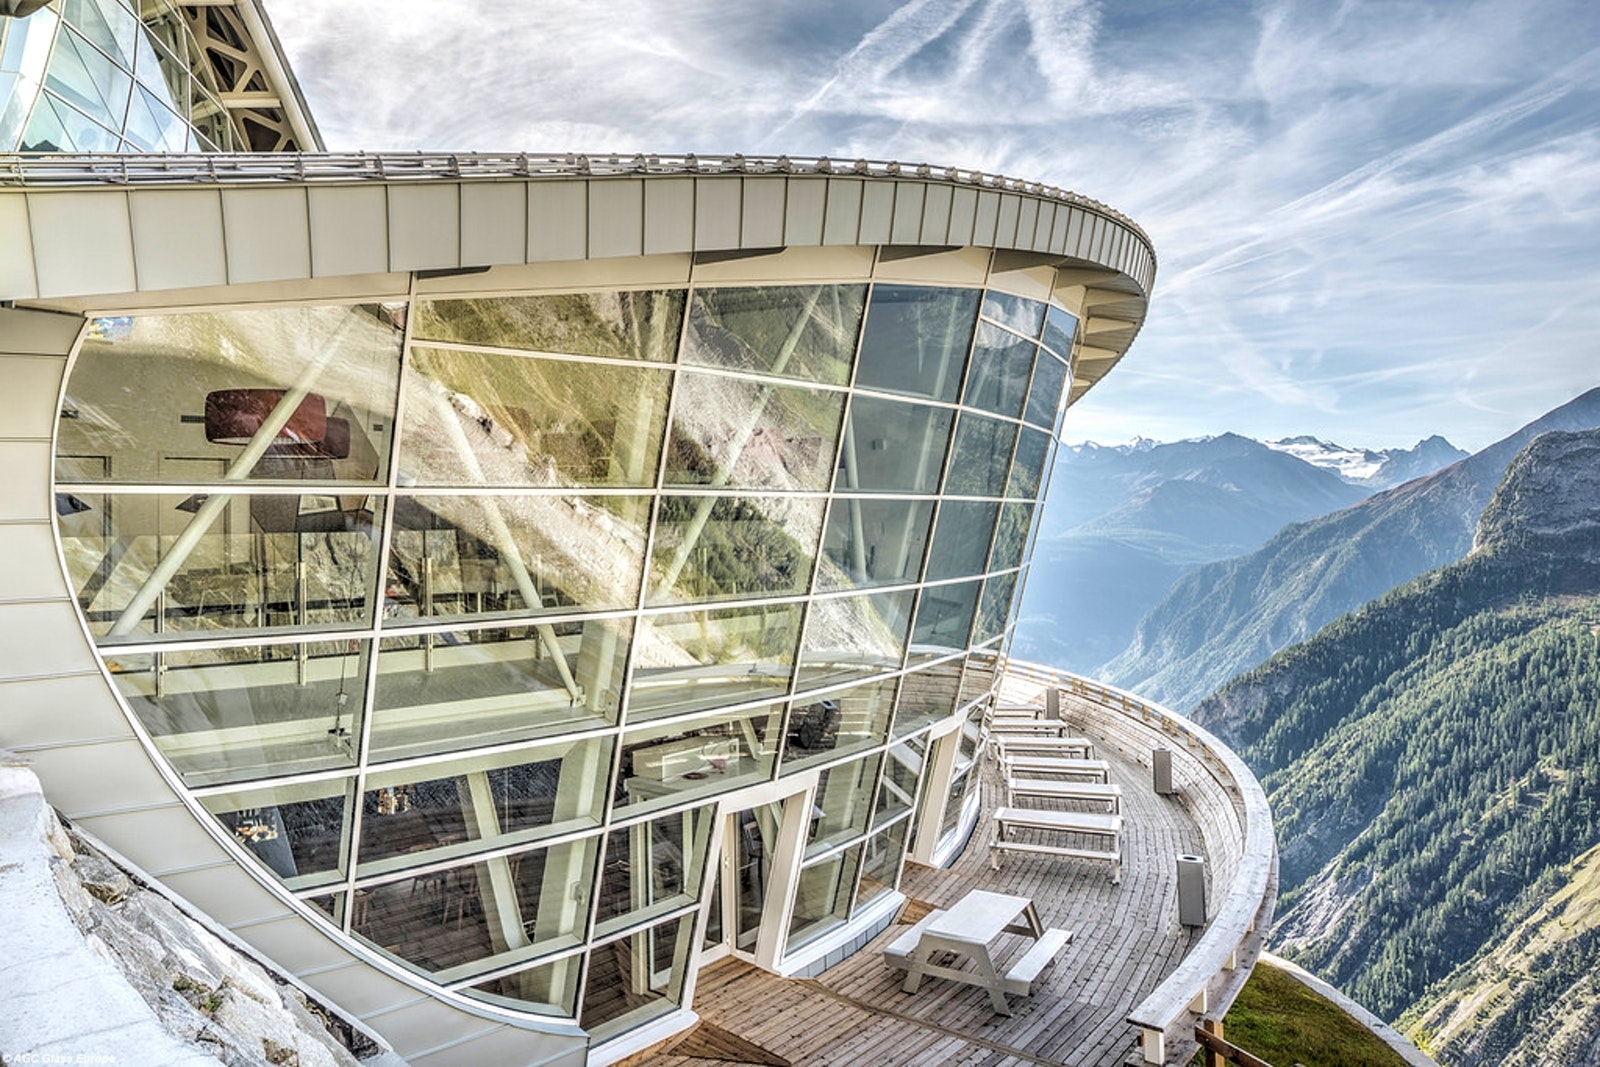 Visita guidata a Aosta, Monte Bianco e Castello di Fenis con partenza da Milano